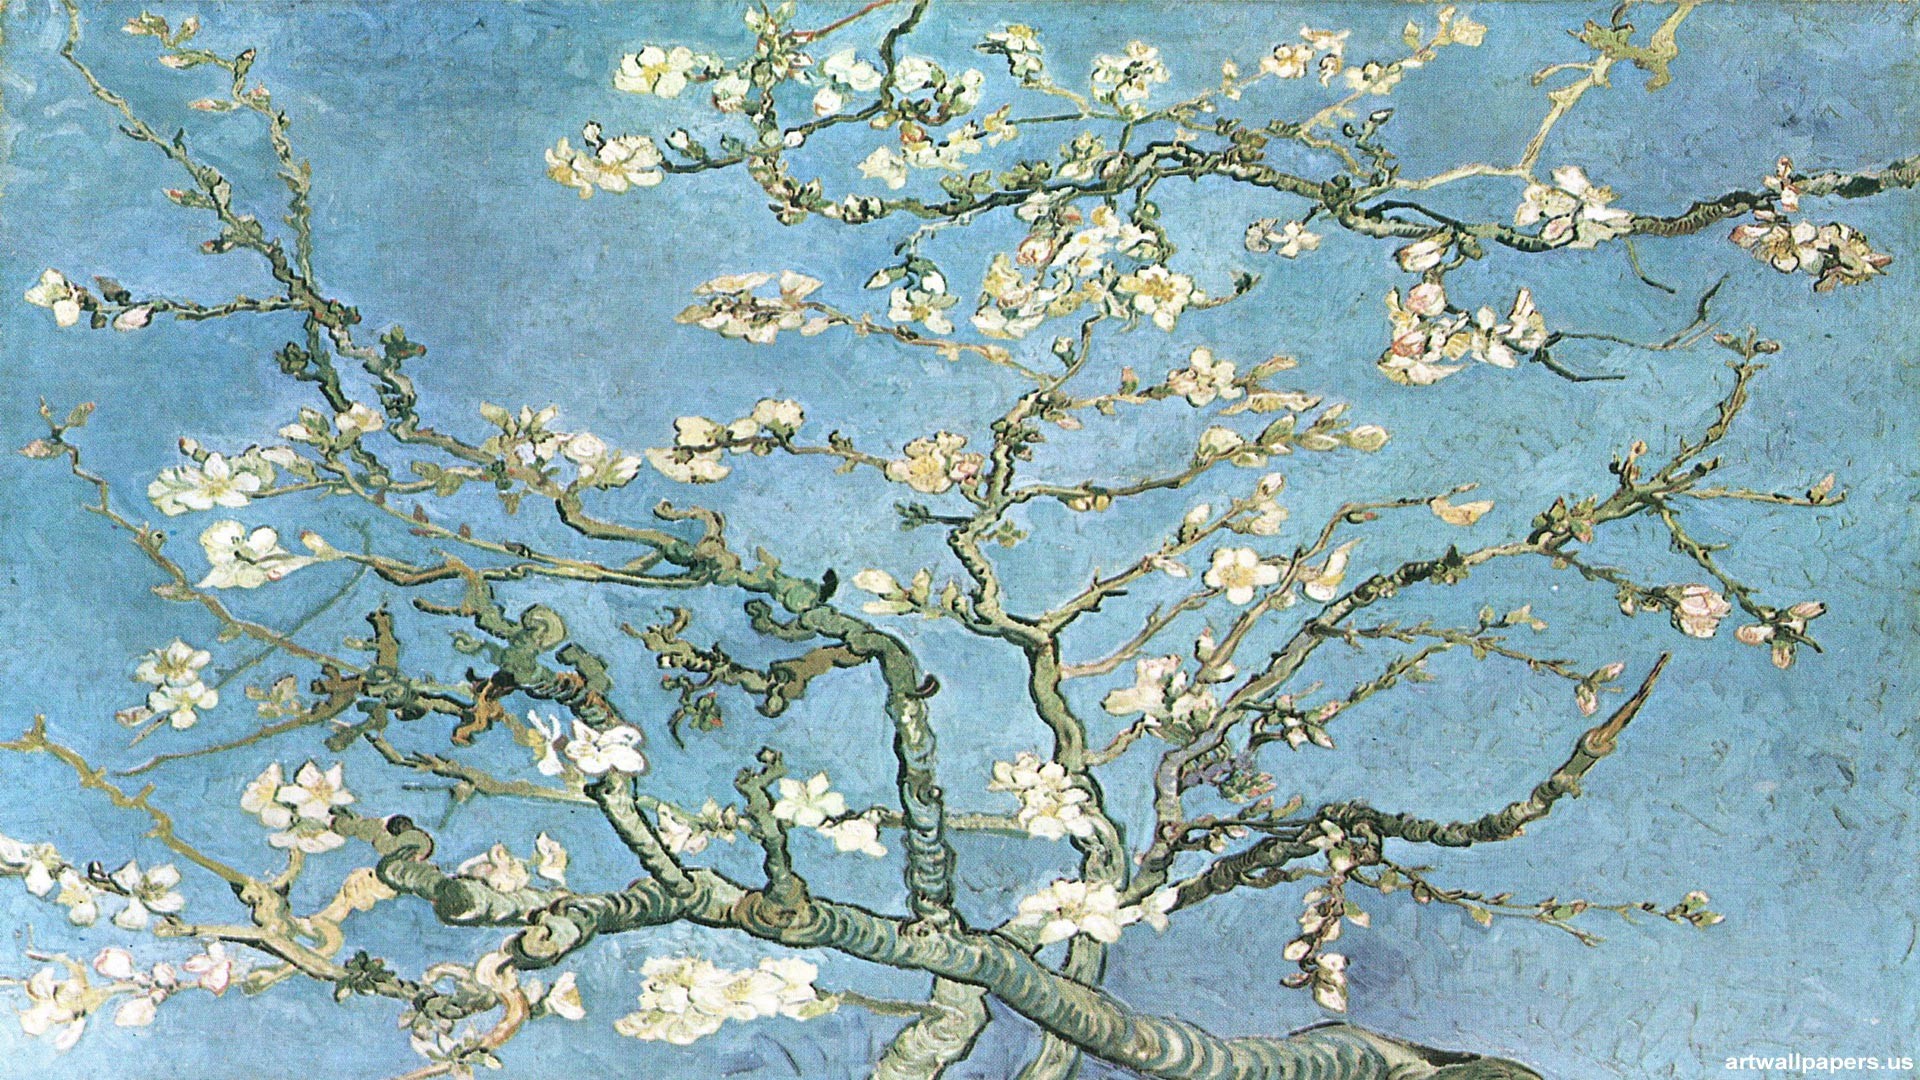 1920x1080 The Starry Night HD desktop wallpaper : Widescreen : High ... Van Gogh ...